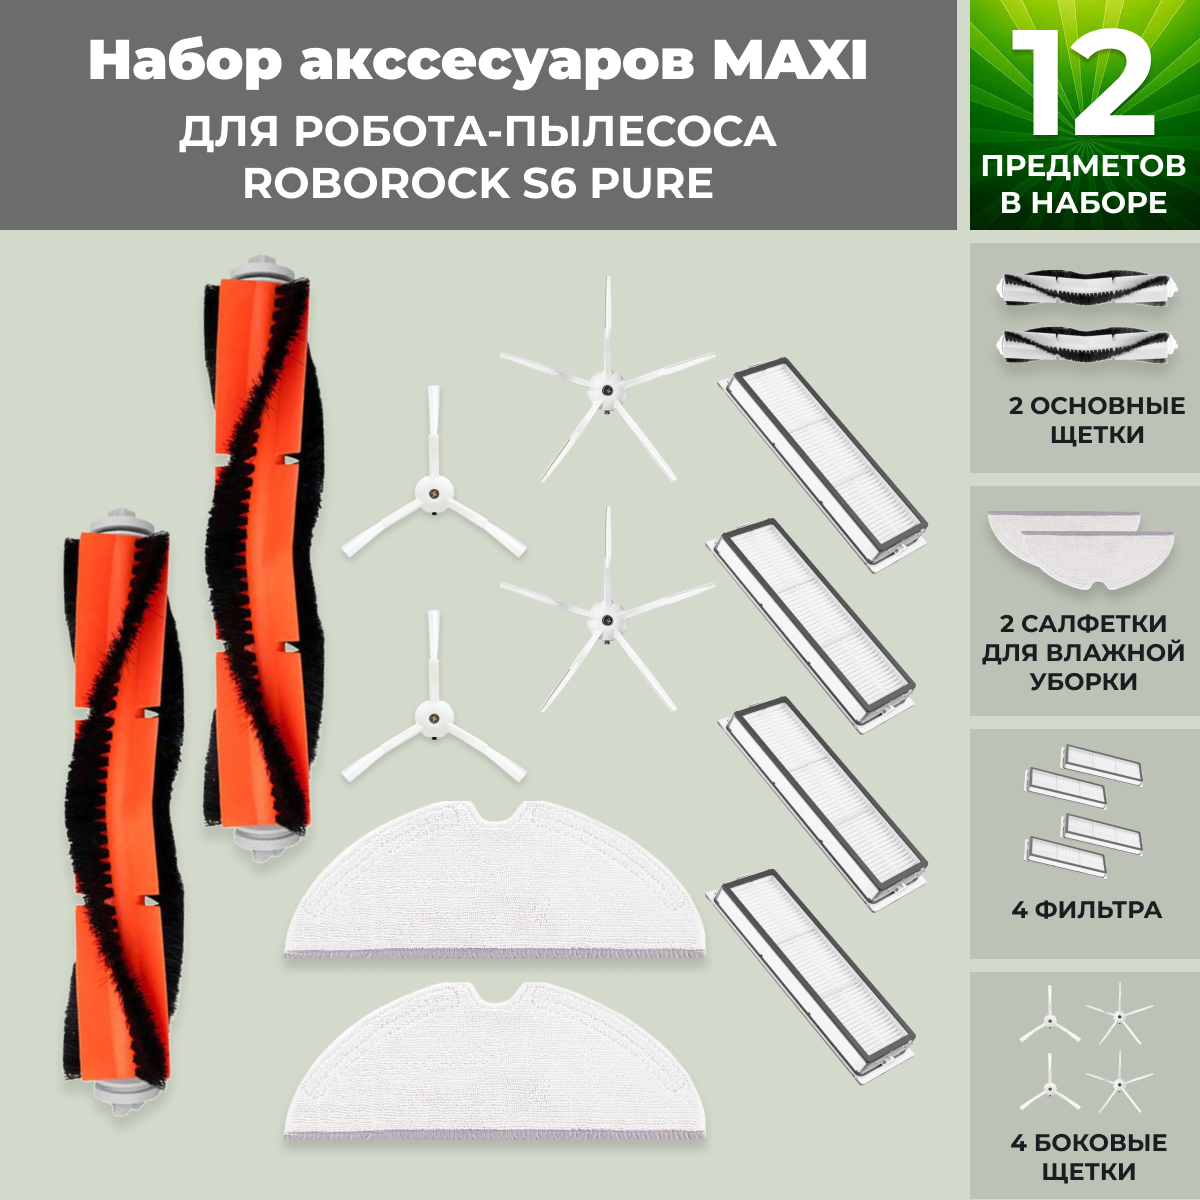 Набор аксессуаров Maxi для робота-пылесоса Roborock S6 Pure, белые боковые щетки 558651, фото 1